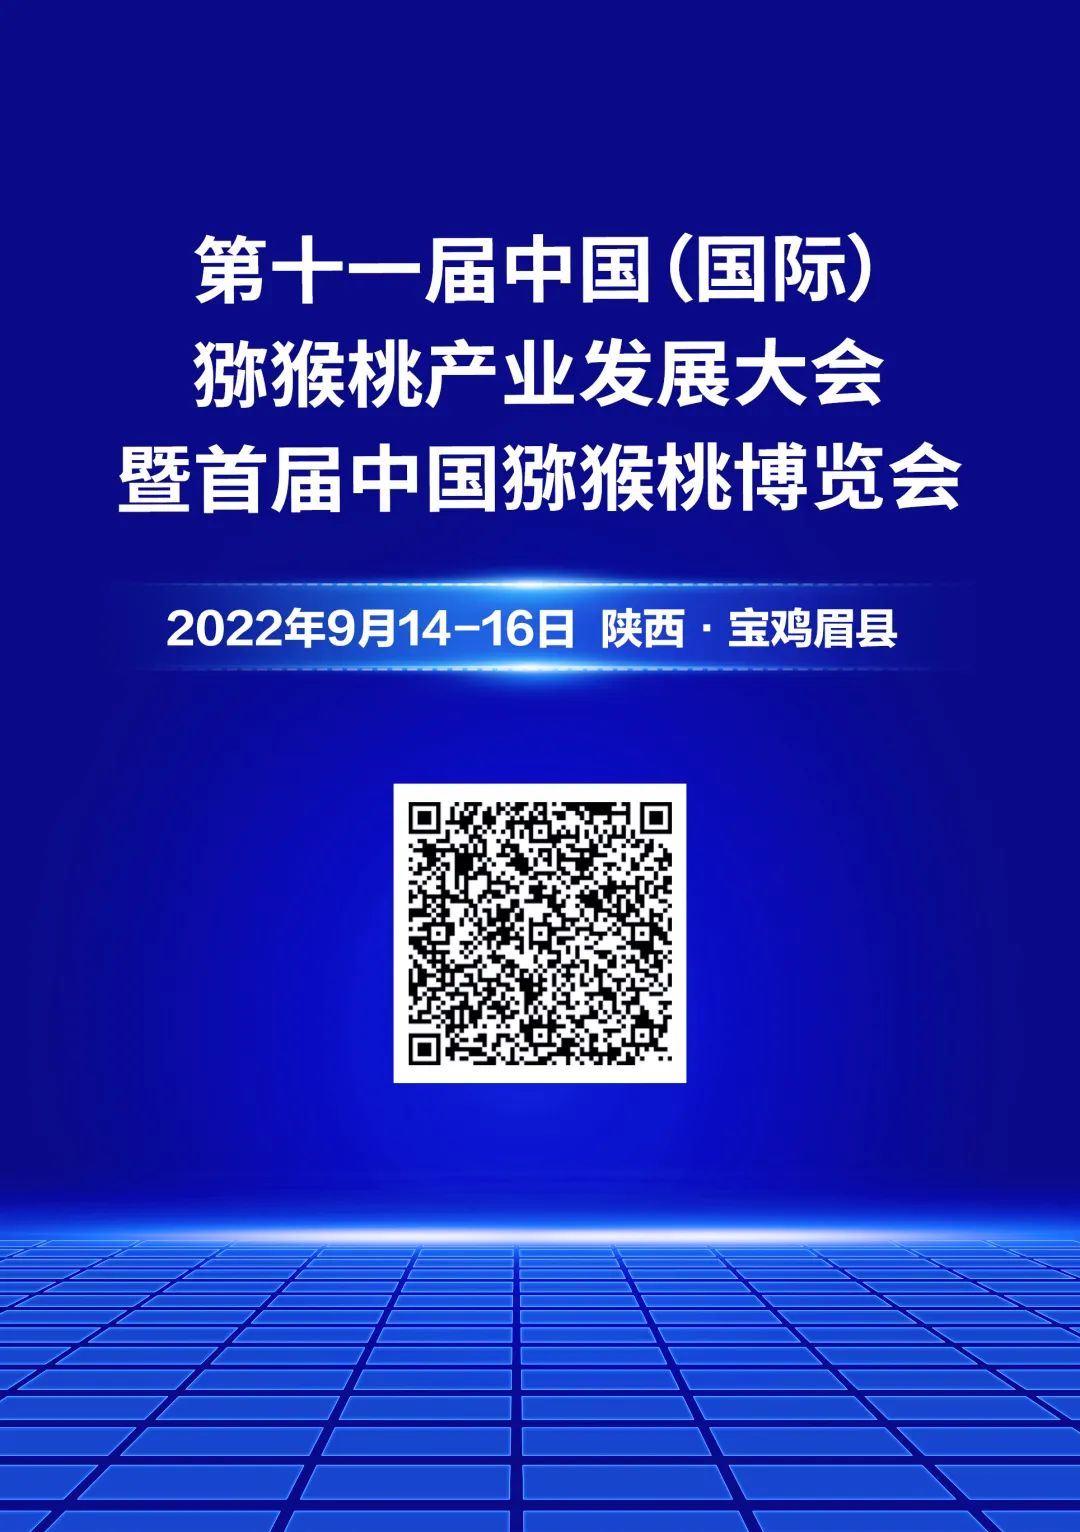 9月14日-16日，第十一届中国（国际）猕猴桃产业发展大会暨首届中国猕猴桃博览会将于眉县召开